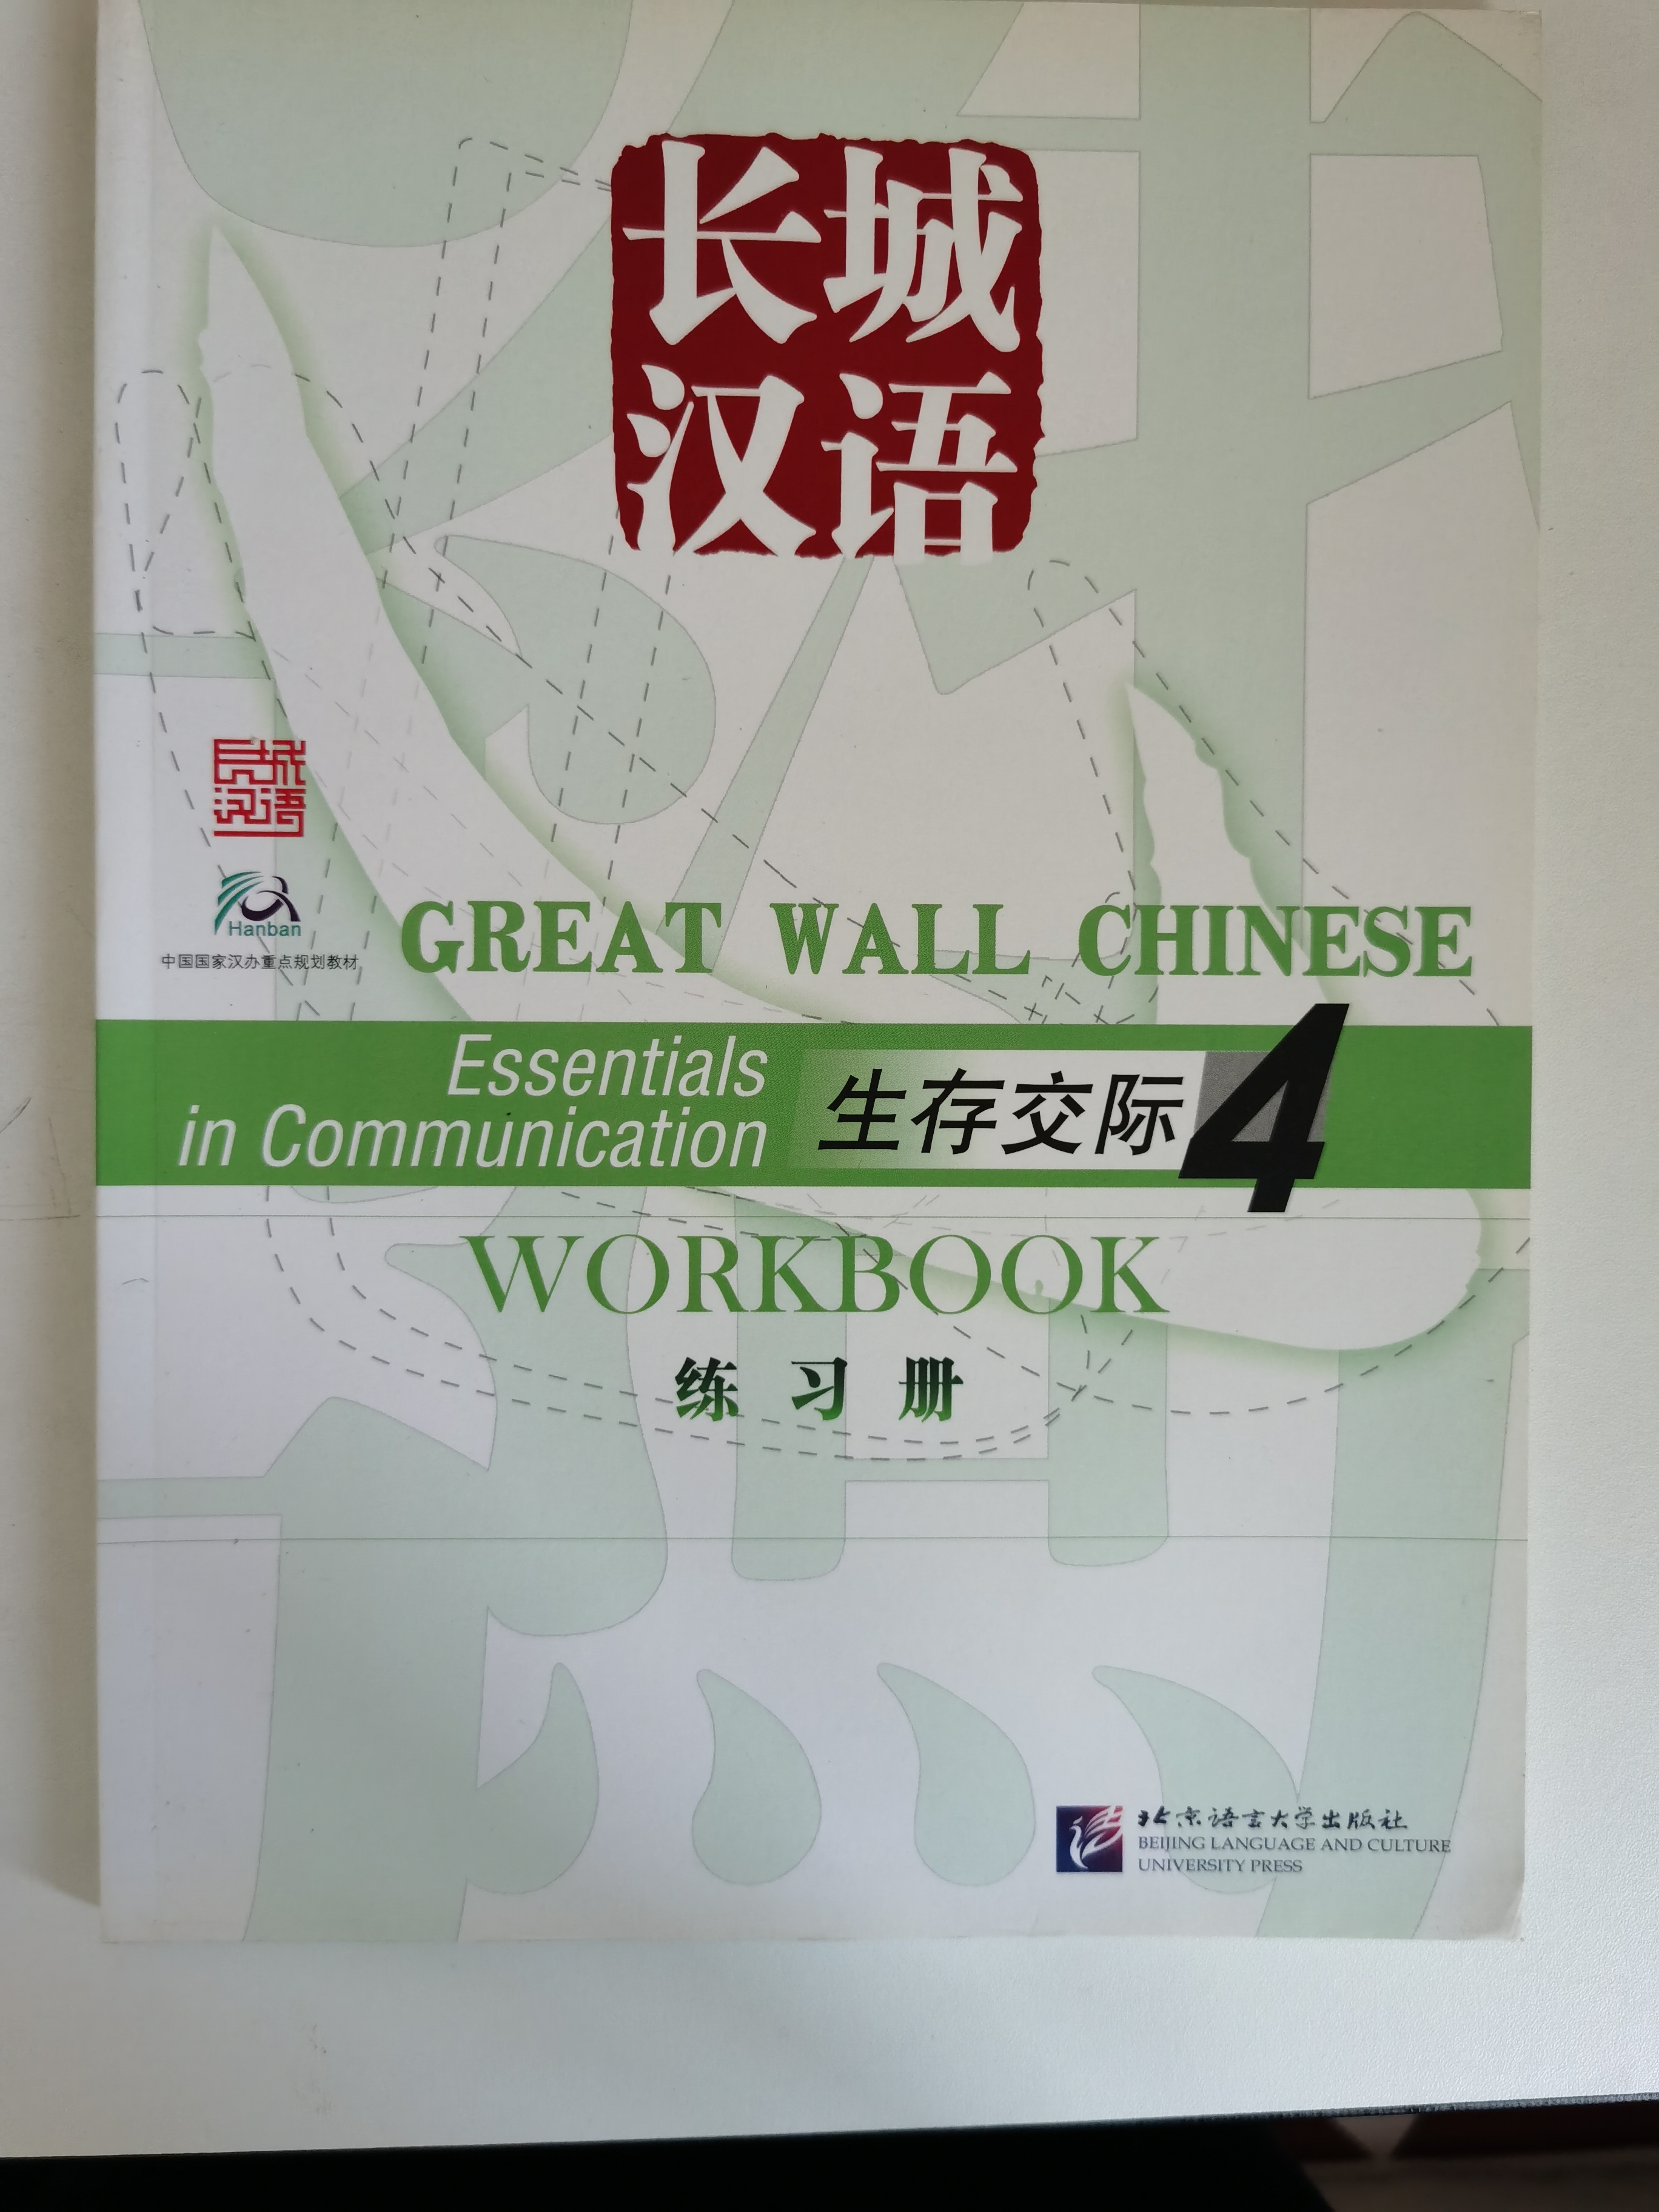 แบบเรียนภาษาจีน 长城汉语4练习册  (Workbook+CD)